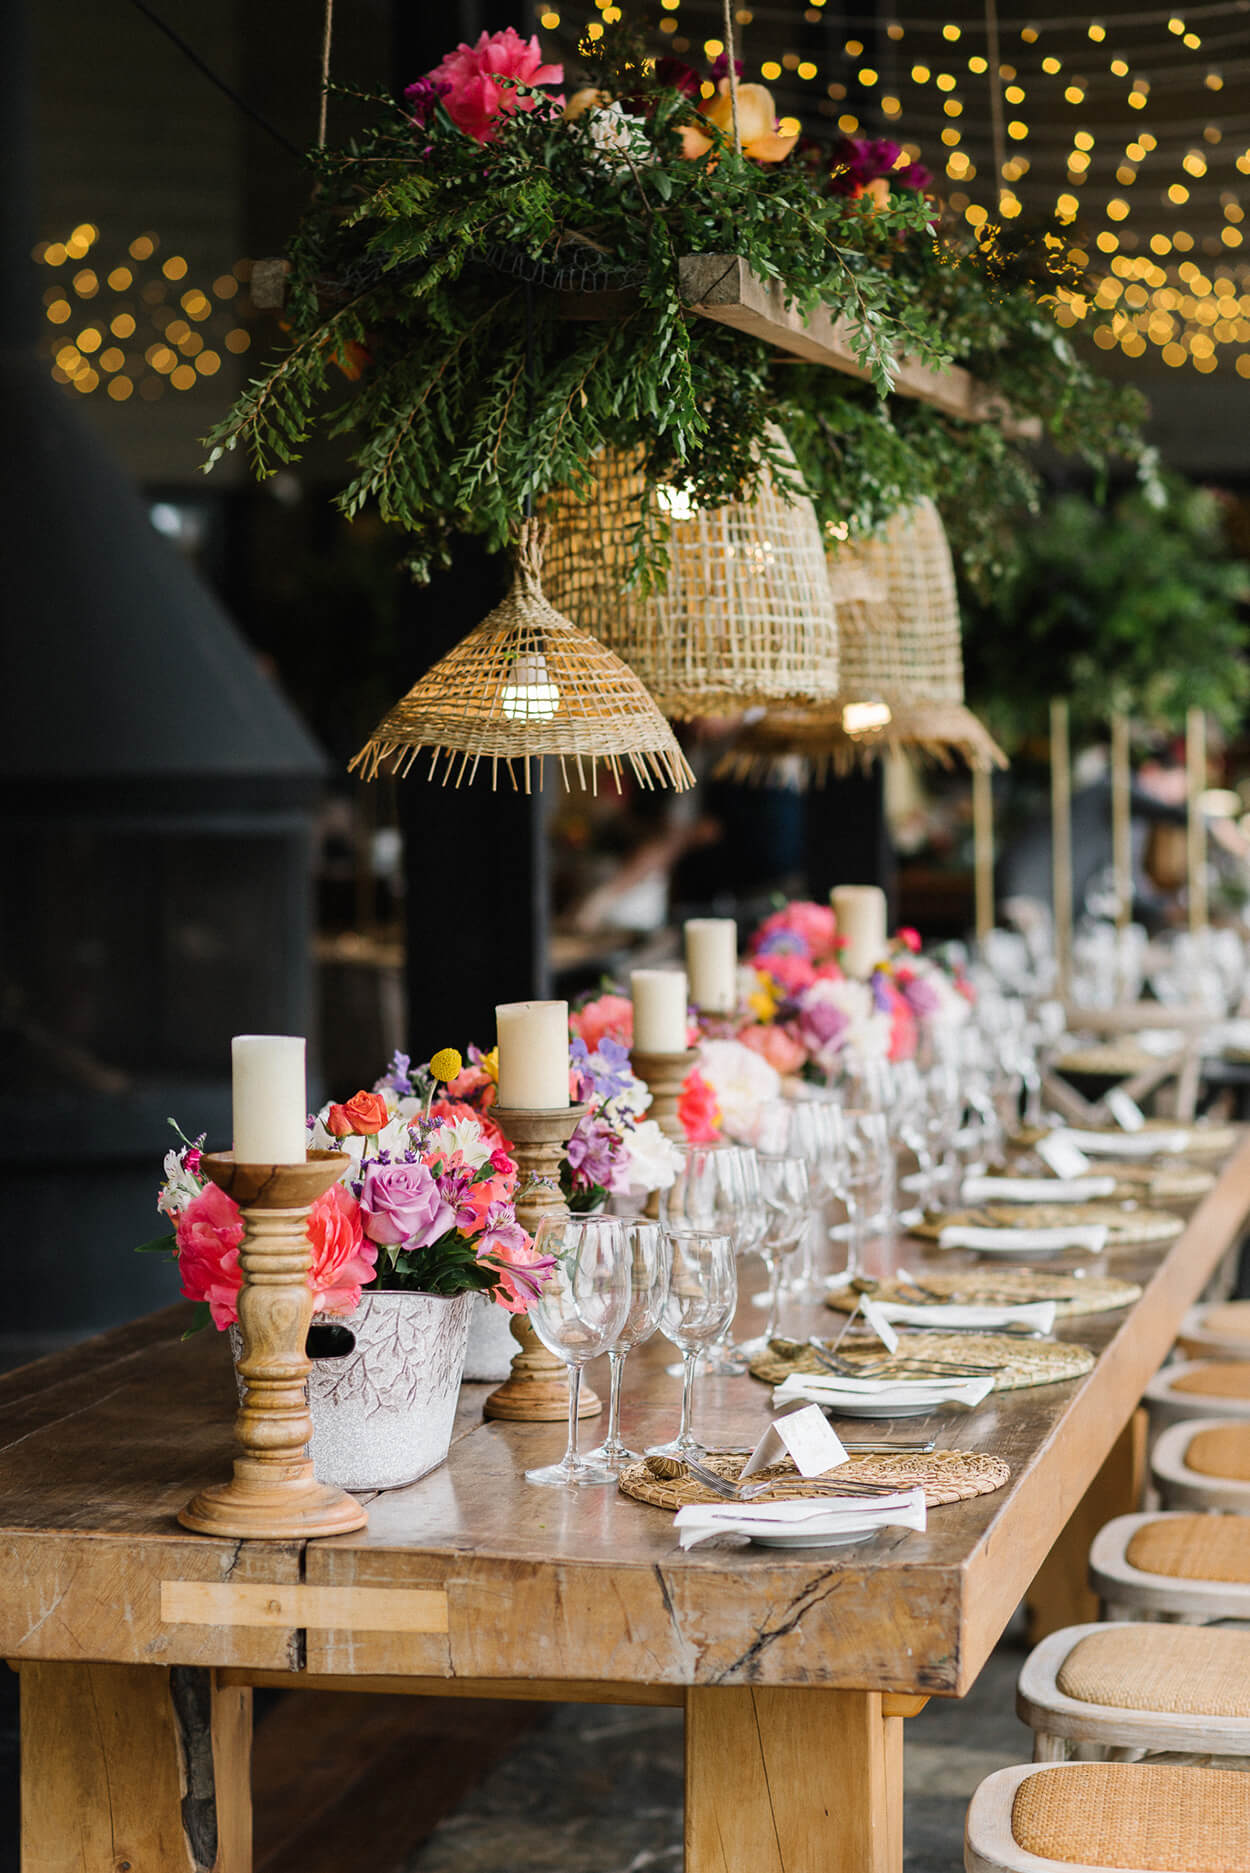 mesa posta com vasos com flores rosas brancas e lilás no centro